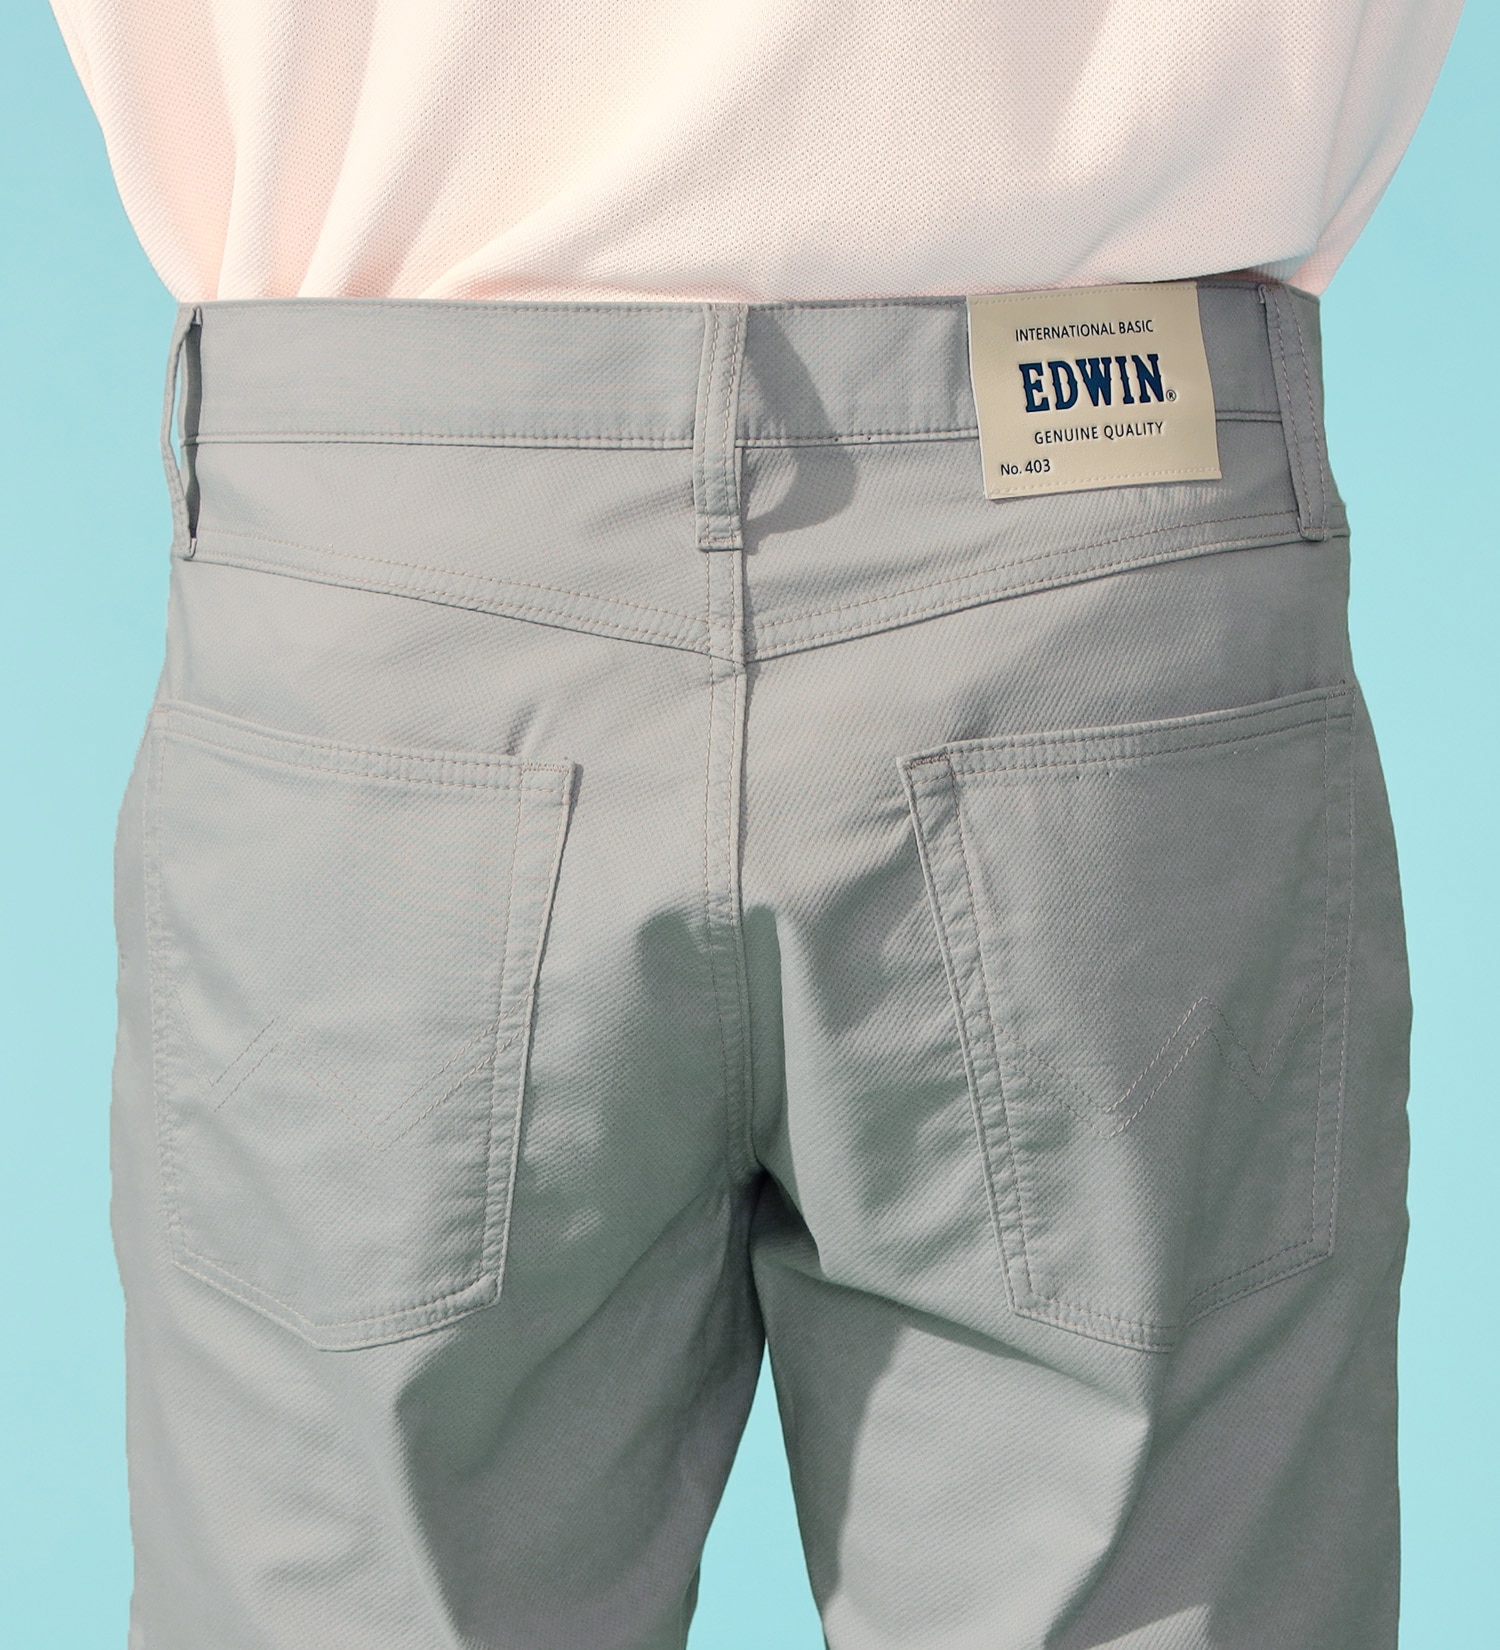 EDWIN(エドウイン)の【GW SALE】【涼】インターナショナルベーシック レギュラーストレートパンツ COOLFLEX 裏メッシュ素材 最軽量 スラッシュポケット|パンツ/パンツ/メンズ|グレー